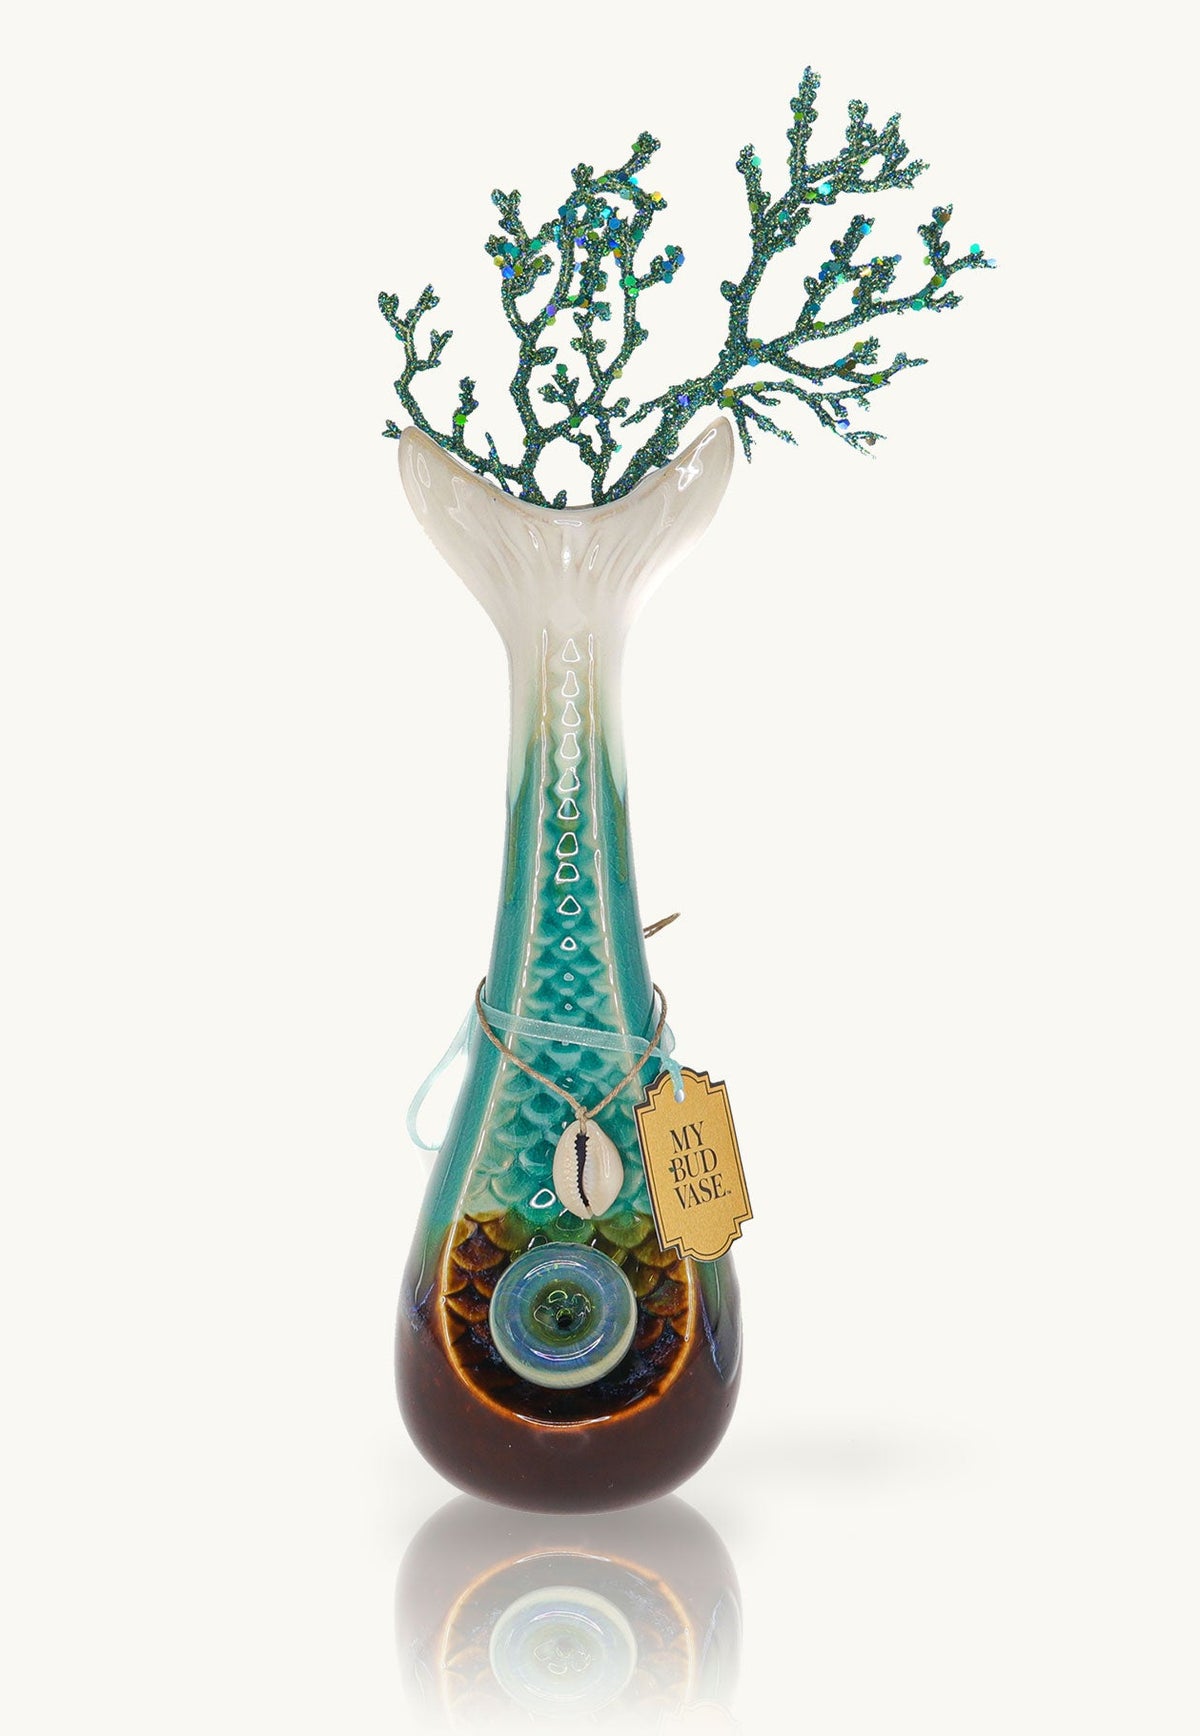 Mermaid Water Pipe - My Bud Vase My Bud Vase